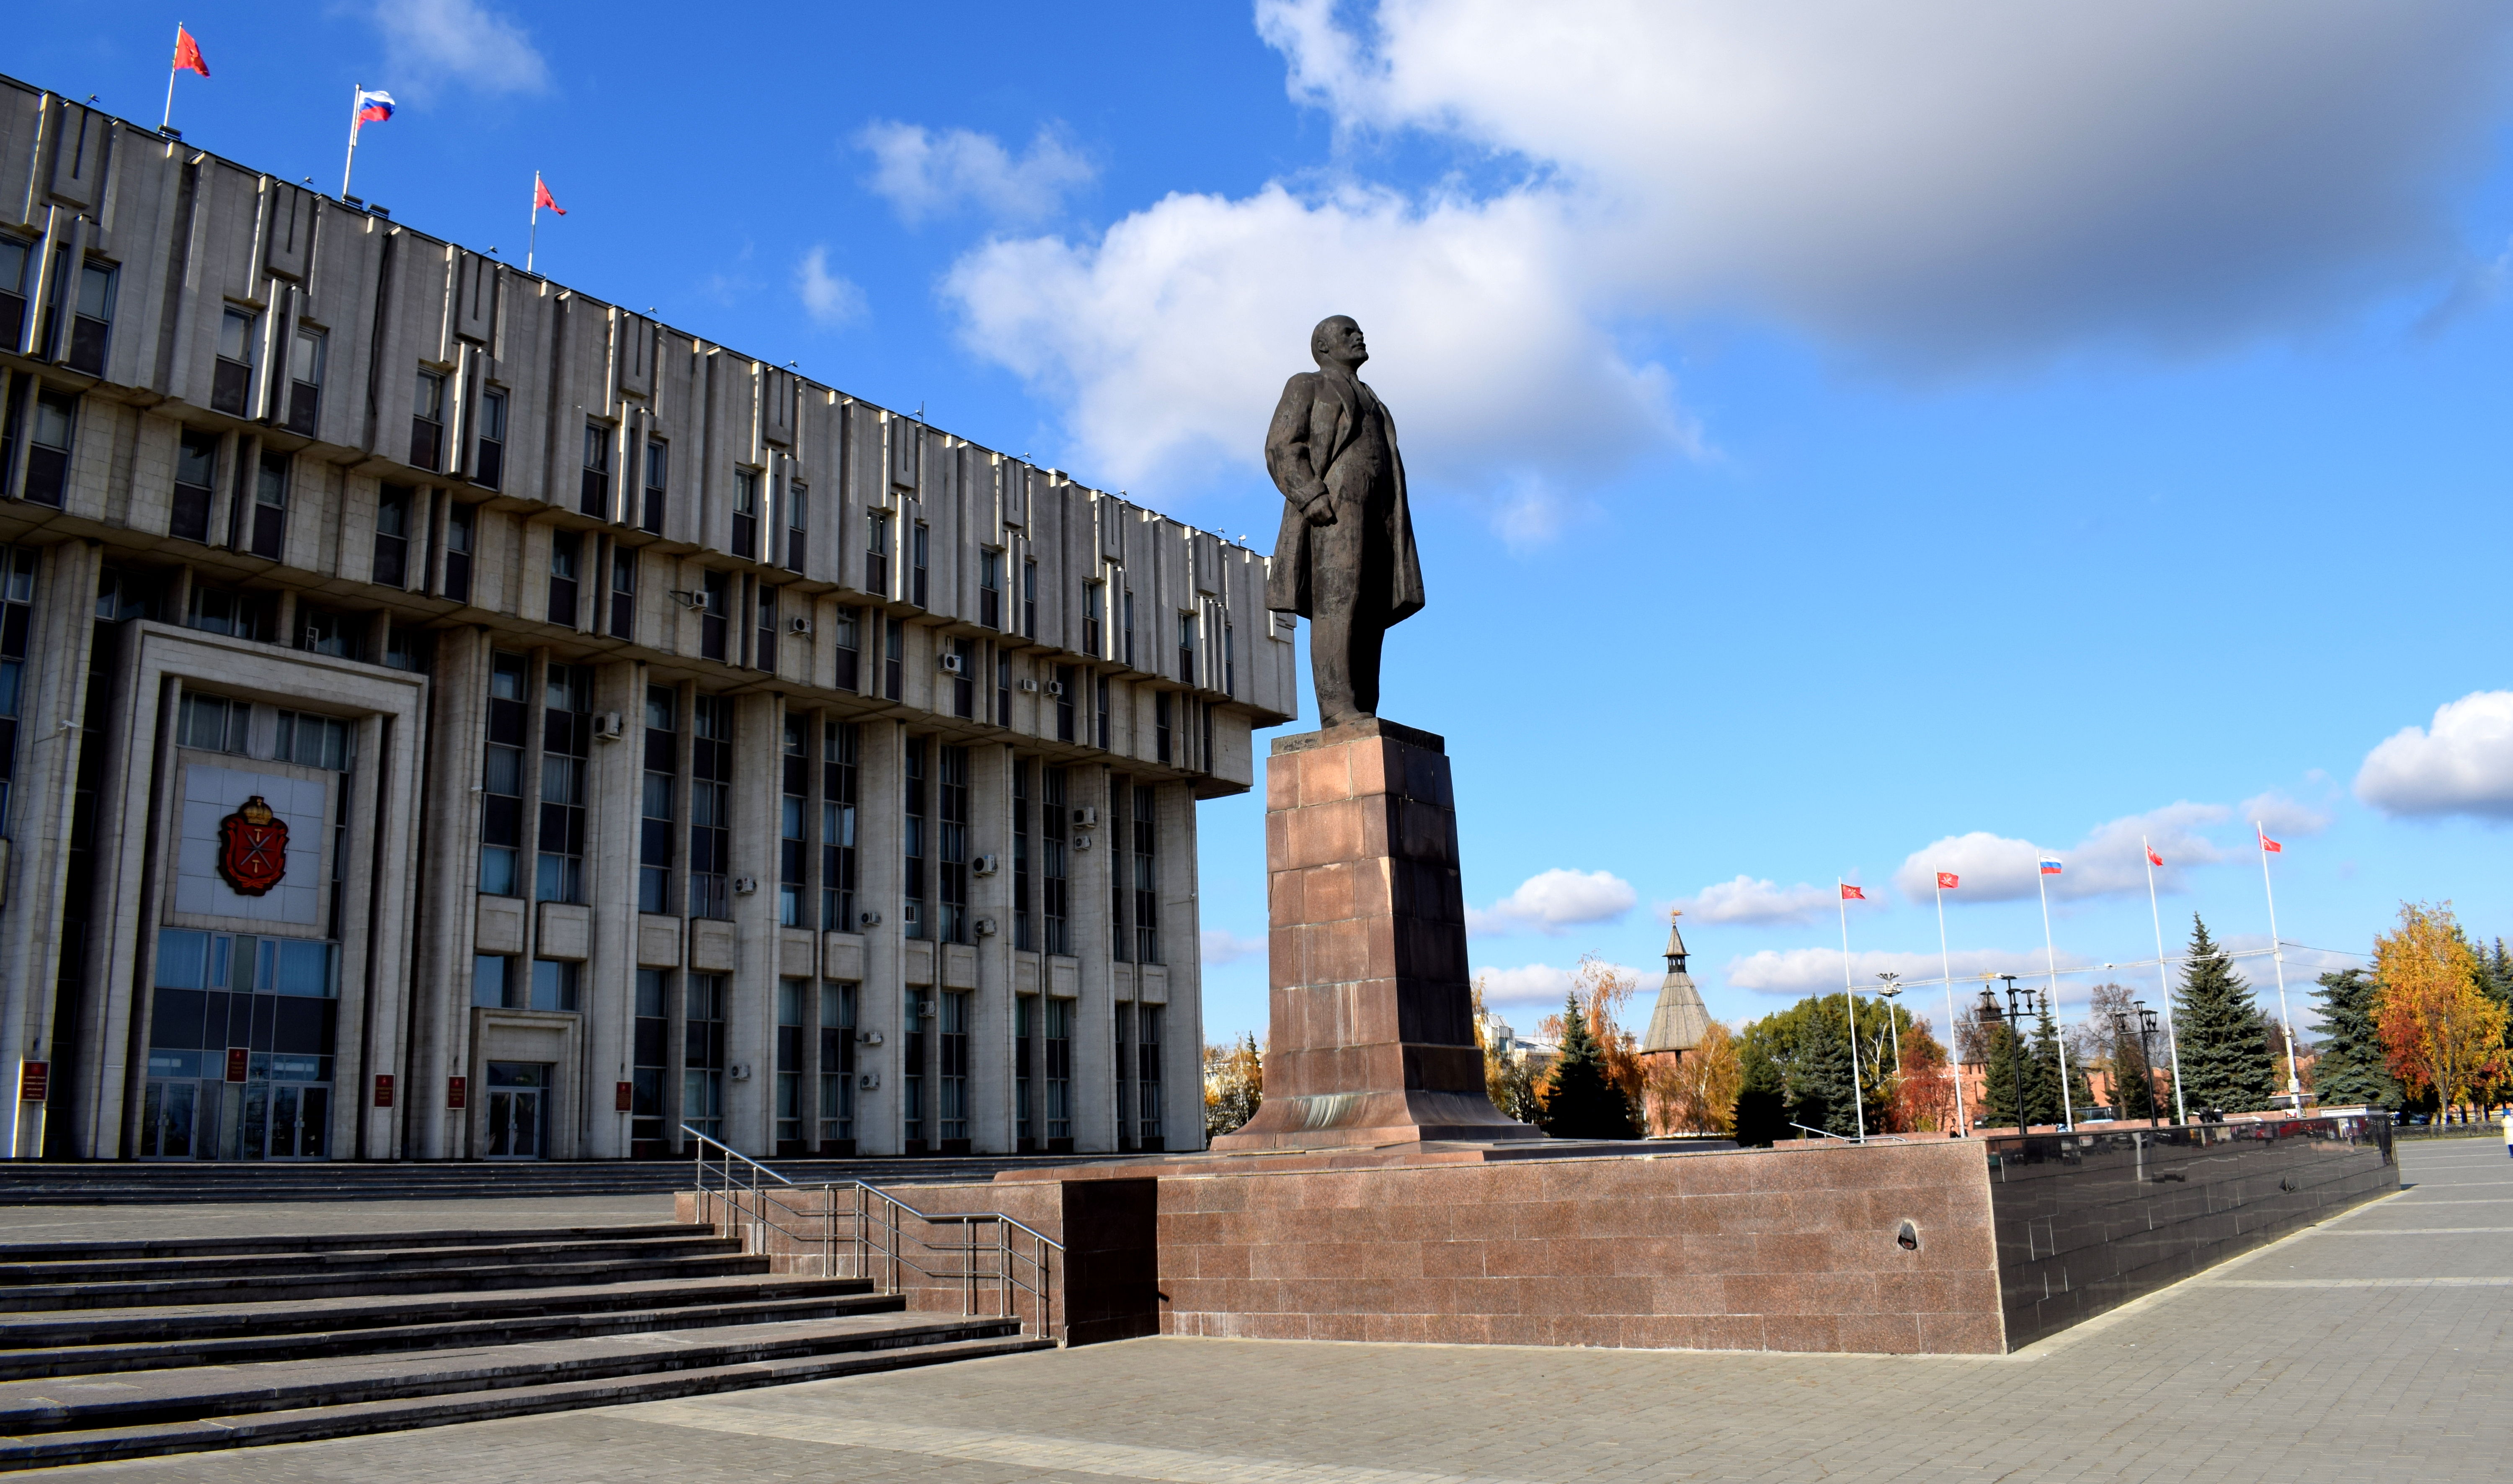 Lenin Statue in Tula, Russia